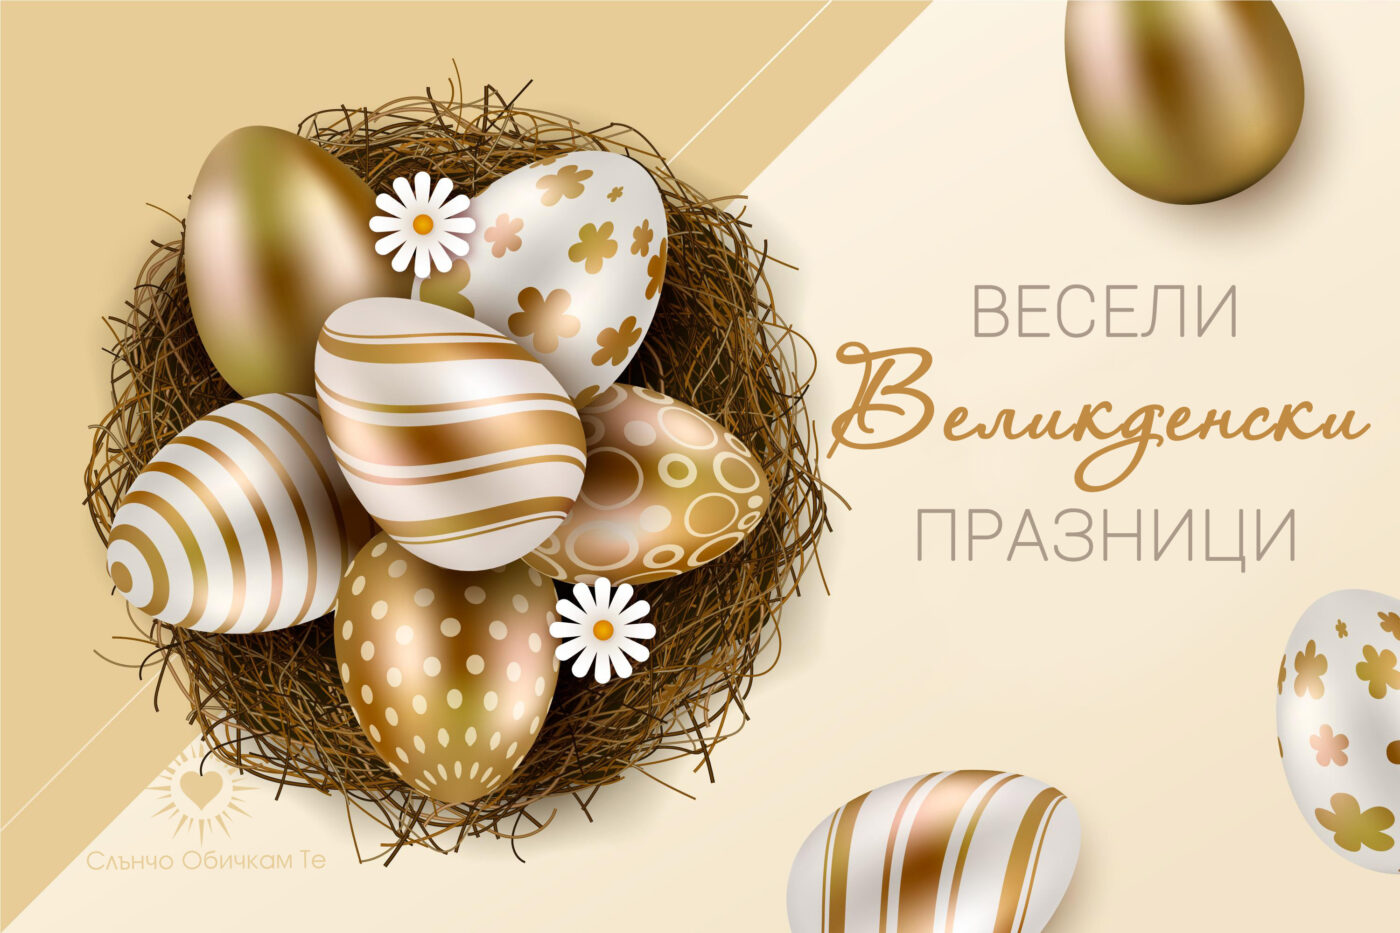 Весели Великденски празници, Честит Великден, картички за Великден 2021, пожелания за Великден, великденски яйца, златни яйца за Великден